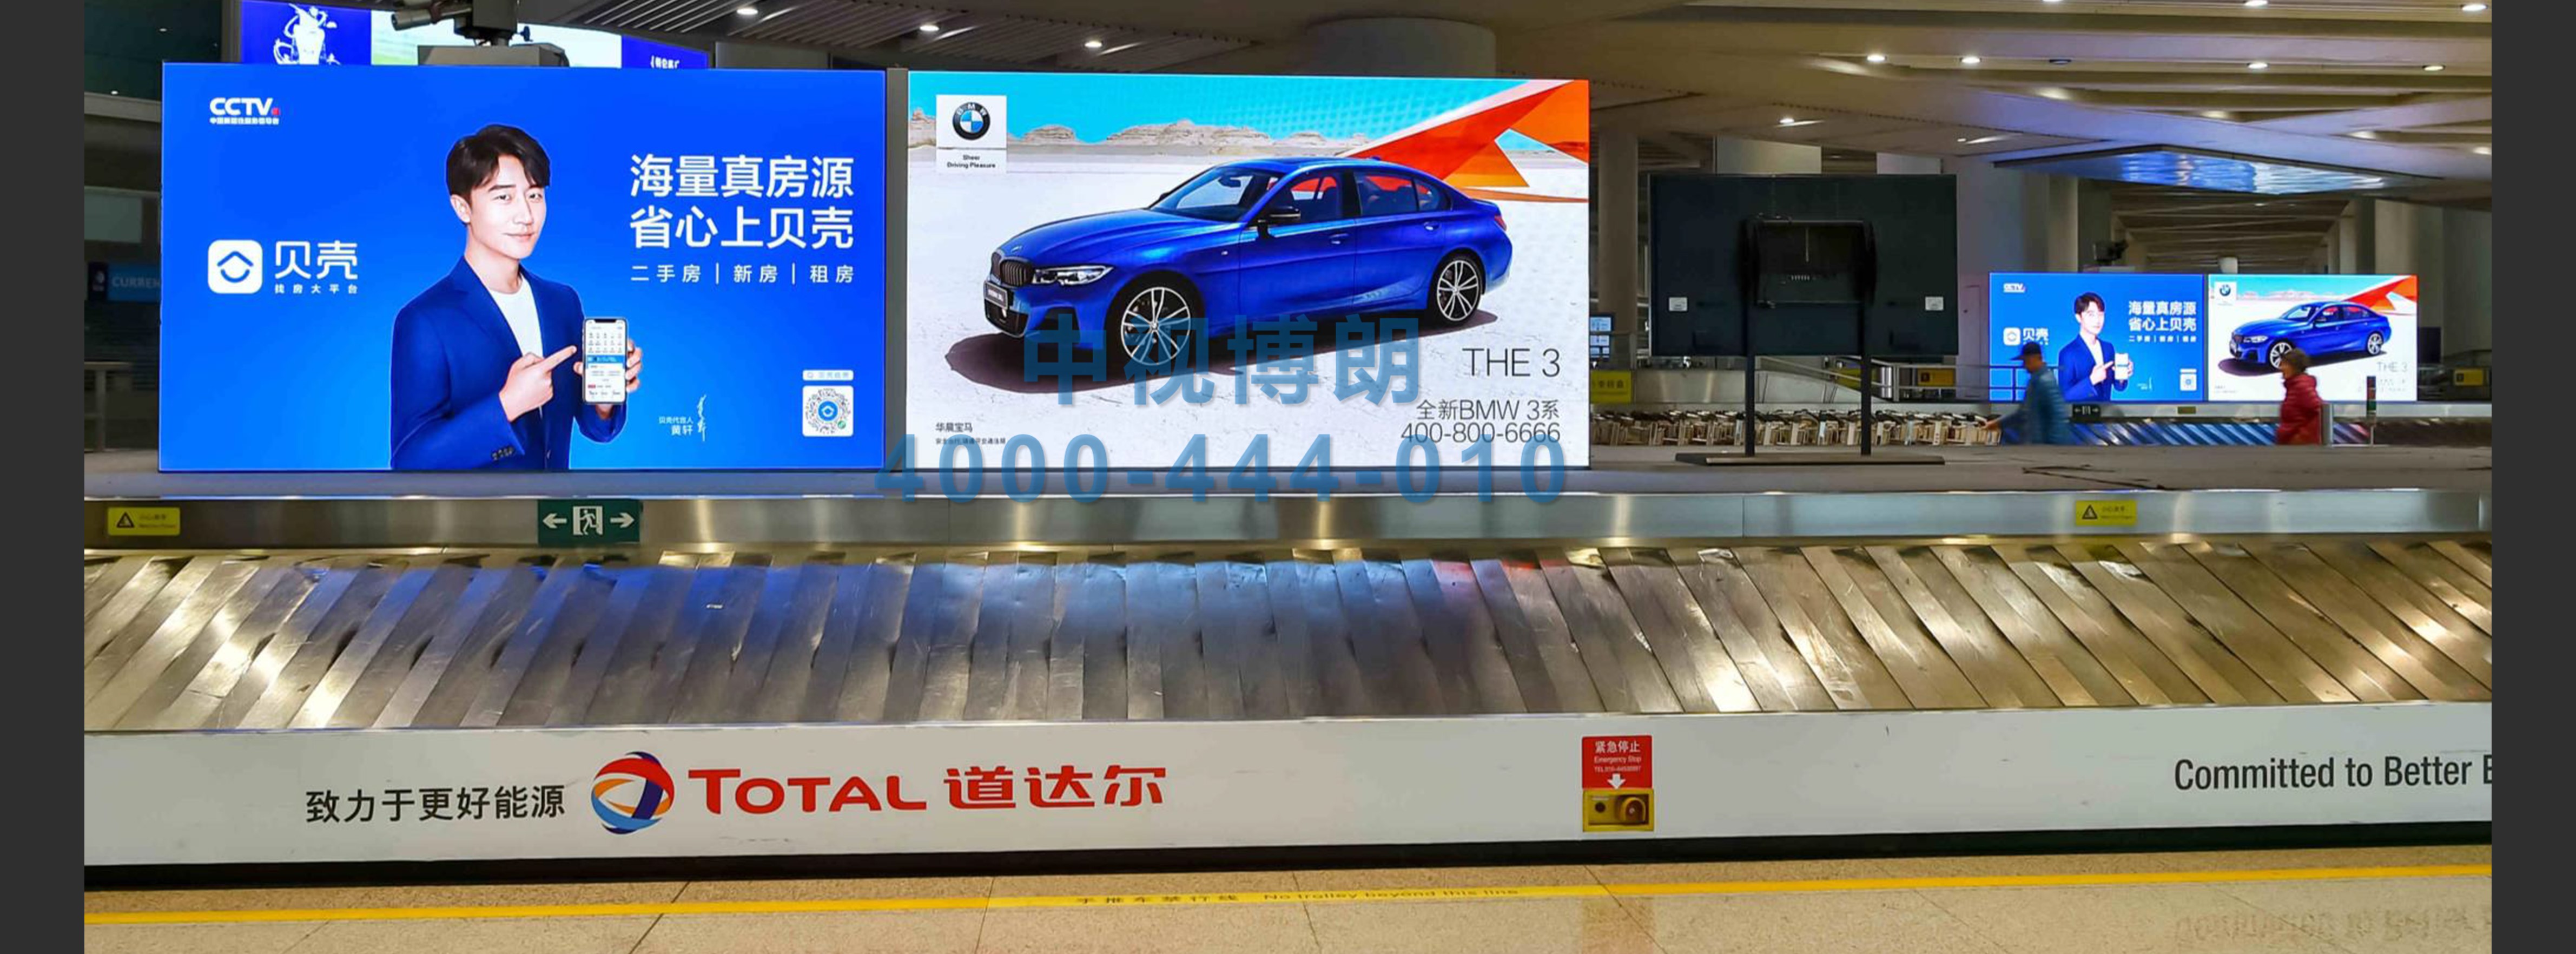 北京首都机场广告-52 Domestic and International Arrival Luggage Halls With Screen Swiping